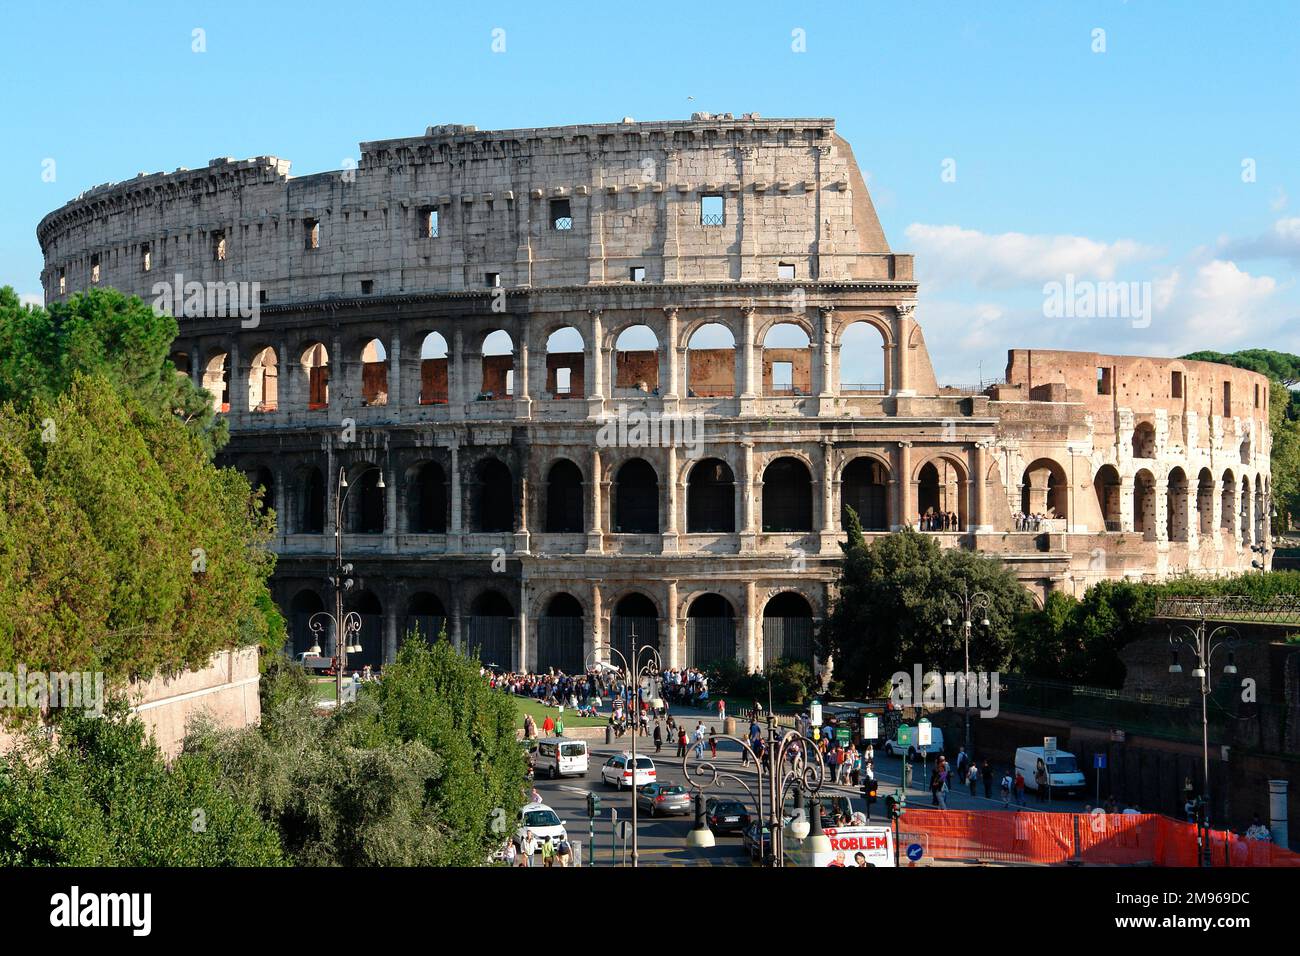 Blick auf das berühmte römische Amphitheater, das Kolosseum, in Rom, Italien. Fertiggestellt im Jahr 80 n. Chr., war es der wichtigste Veranstaltungsort in Rom für Gladiatorenwettbewerbe und andere öffentliche Spektakel, einschließlich der Hinrichtung von Kriminellen, und konnte 50.000 Zuschauer aufnehmen. Stockfoto